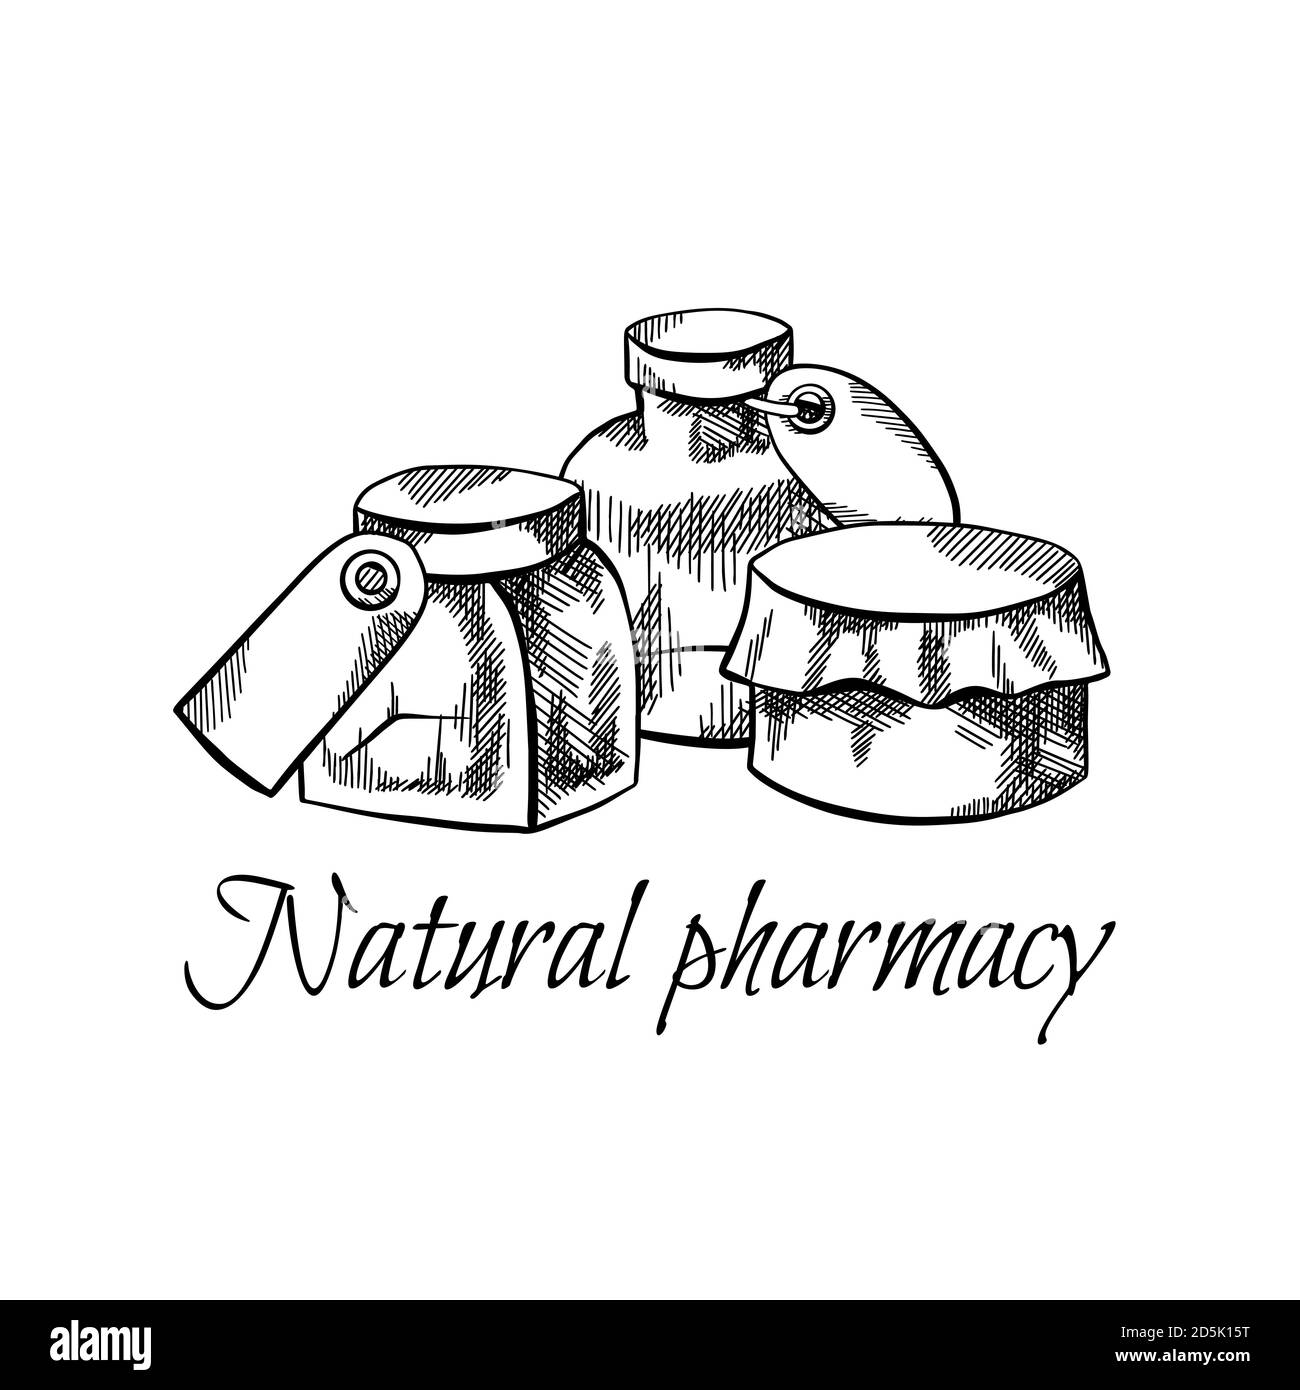 Farmacia naturale. Illustrazione di flaconi, flaconi e lattine con etichette, tratteggi e scritte. Sanità e medicina. Incisione di oggetti vettoriali Illustrazione Vettoriale